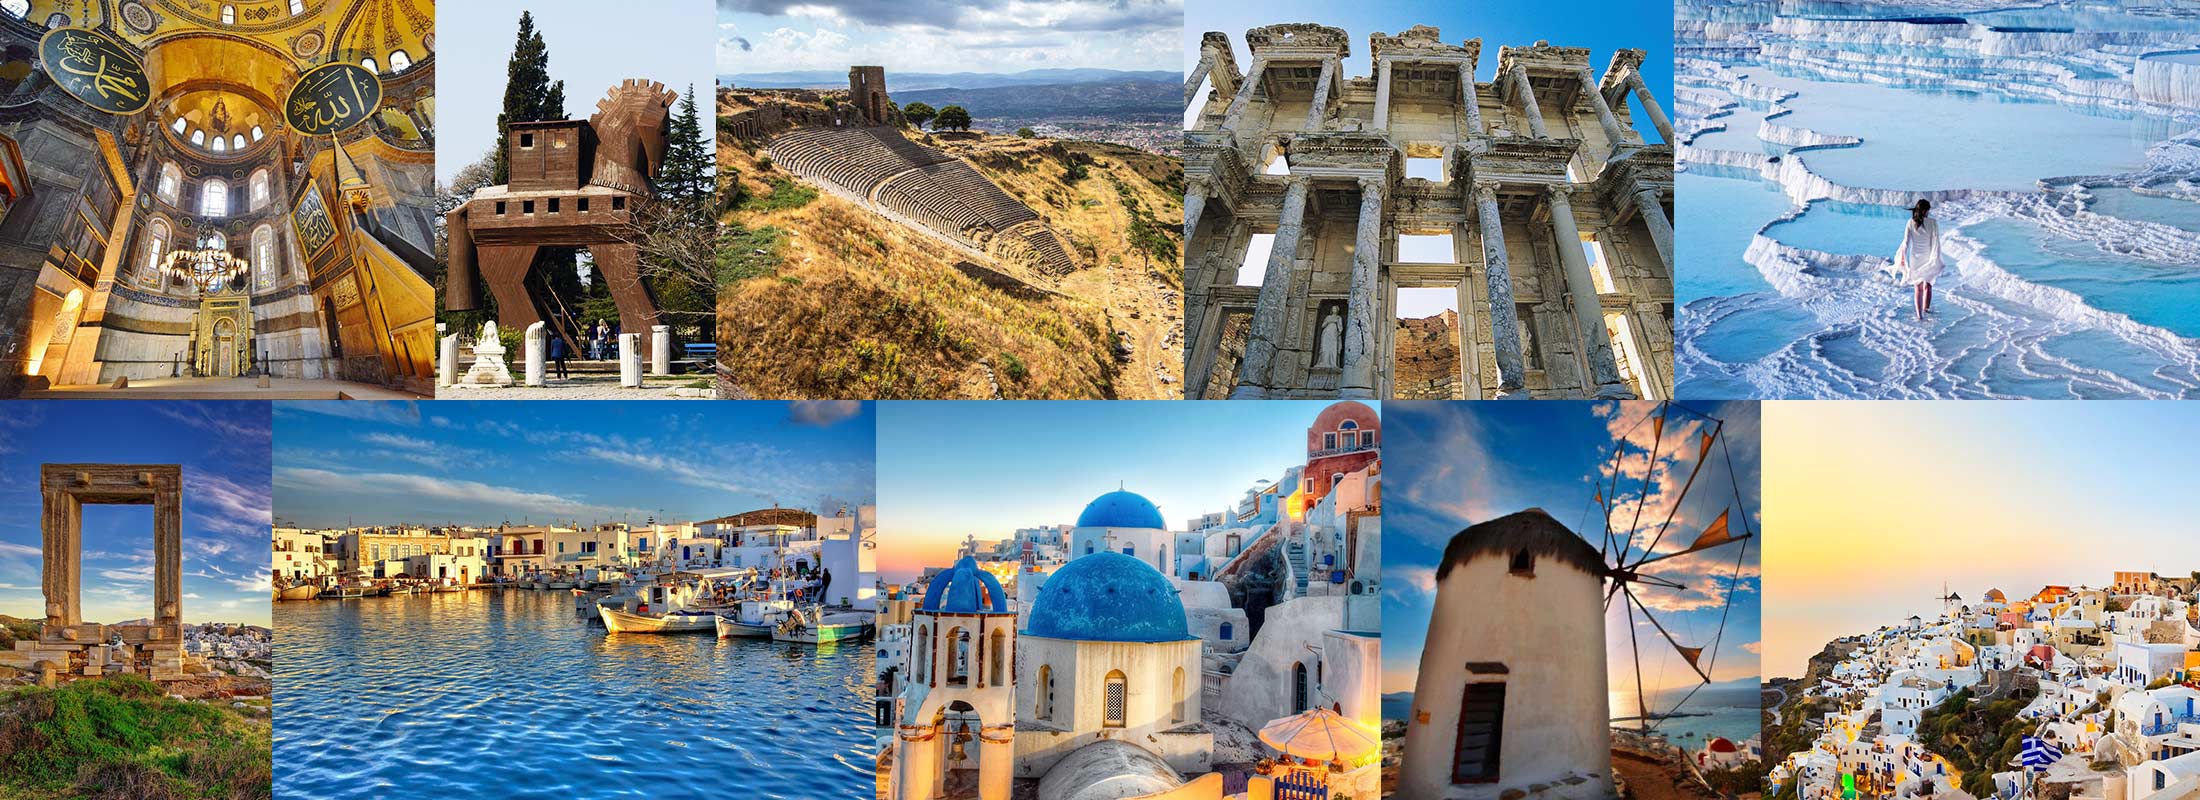 istanbul-troy-pergamon-ephesus-sirince-pamukkale-hierapolis-athens-mykonos-santorini-naxos-paros-greece-turkey-package-tours